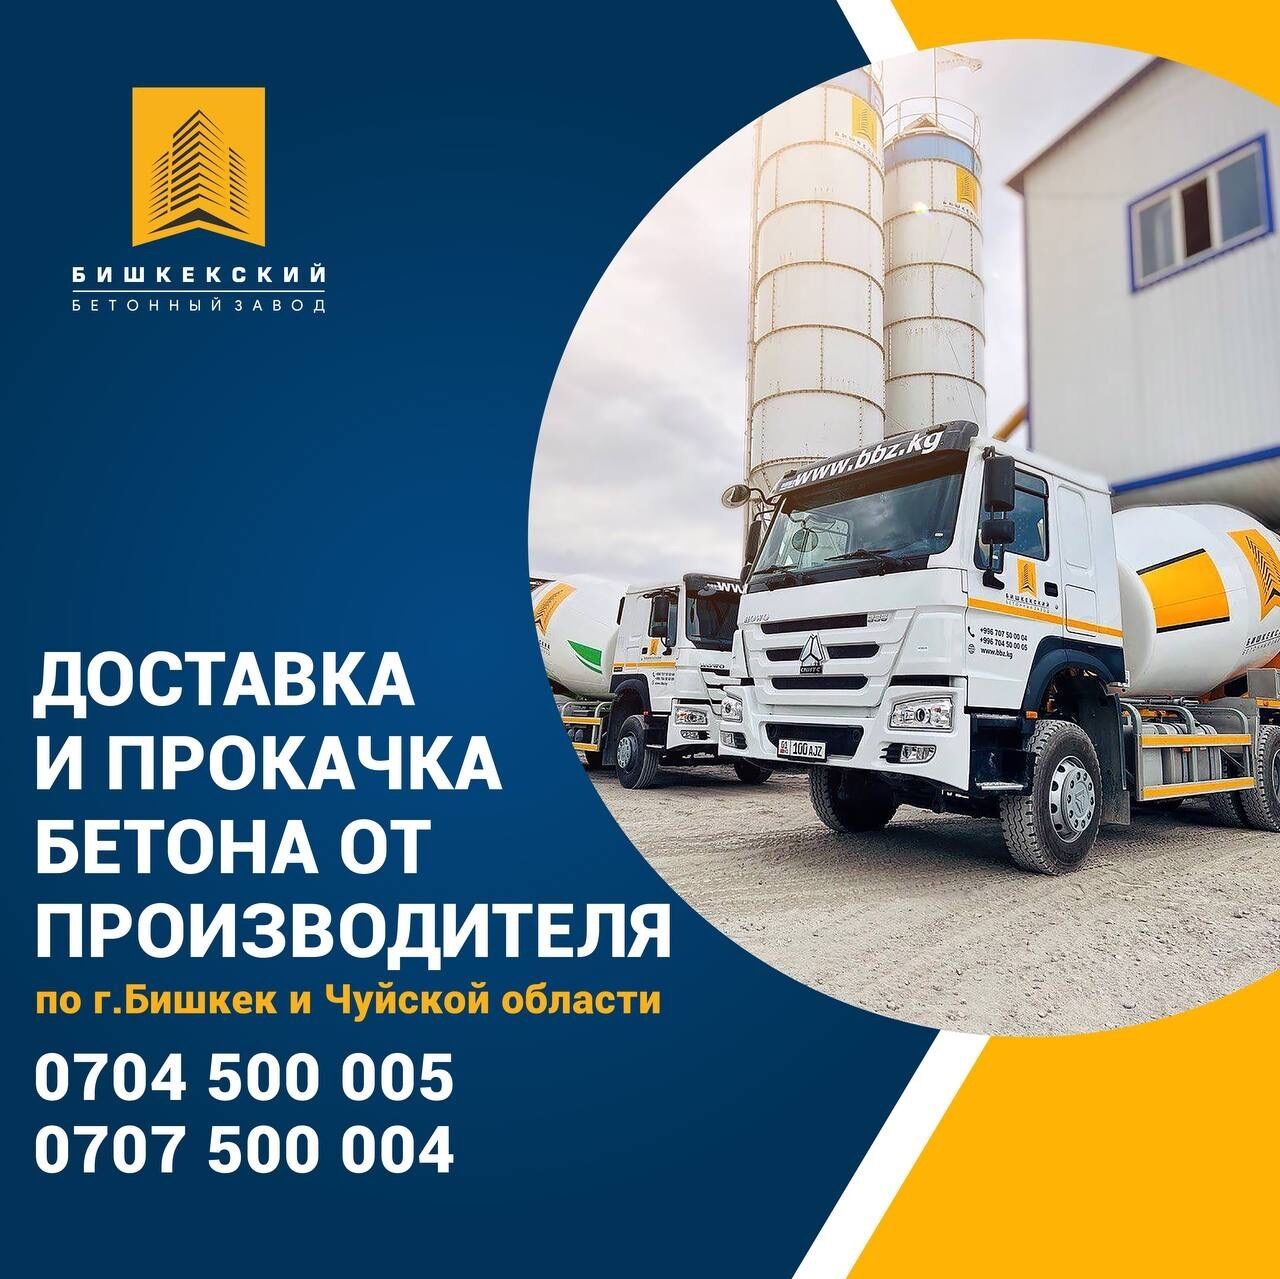 Бетон Бишкекский бетонный завод ➤ Кыргызстан ᐉ Бизнес-профиль компании на lalafo.kg